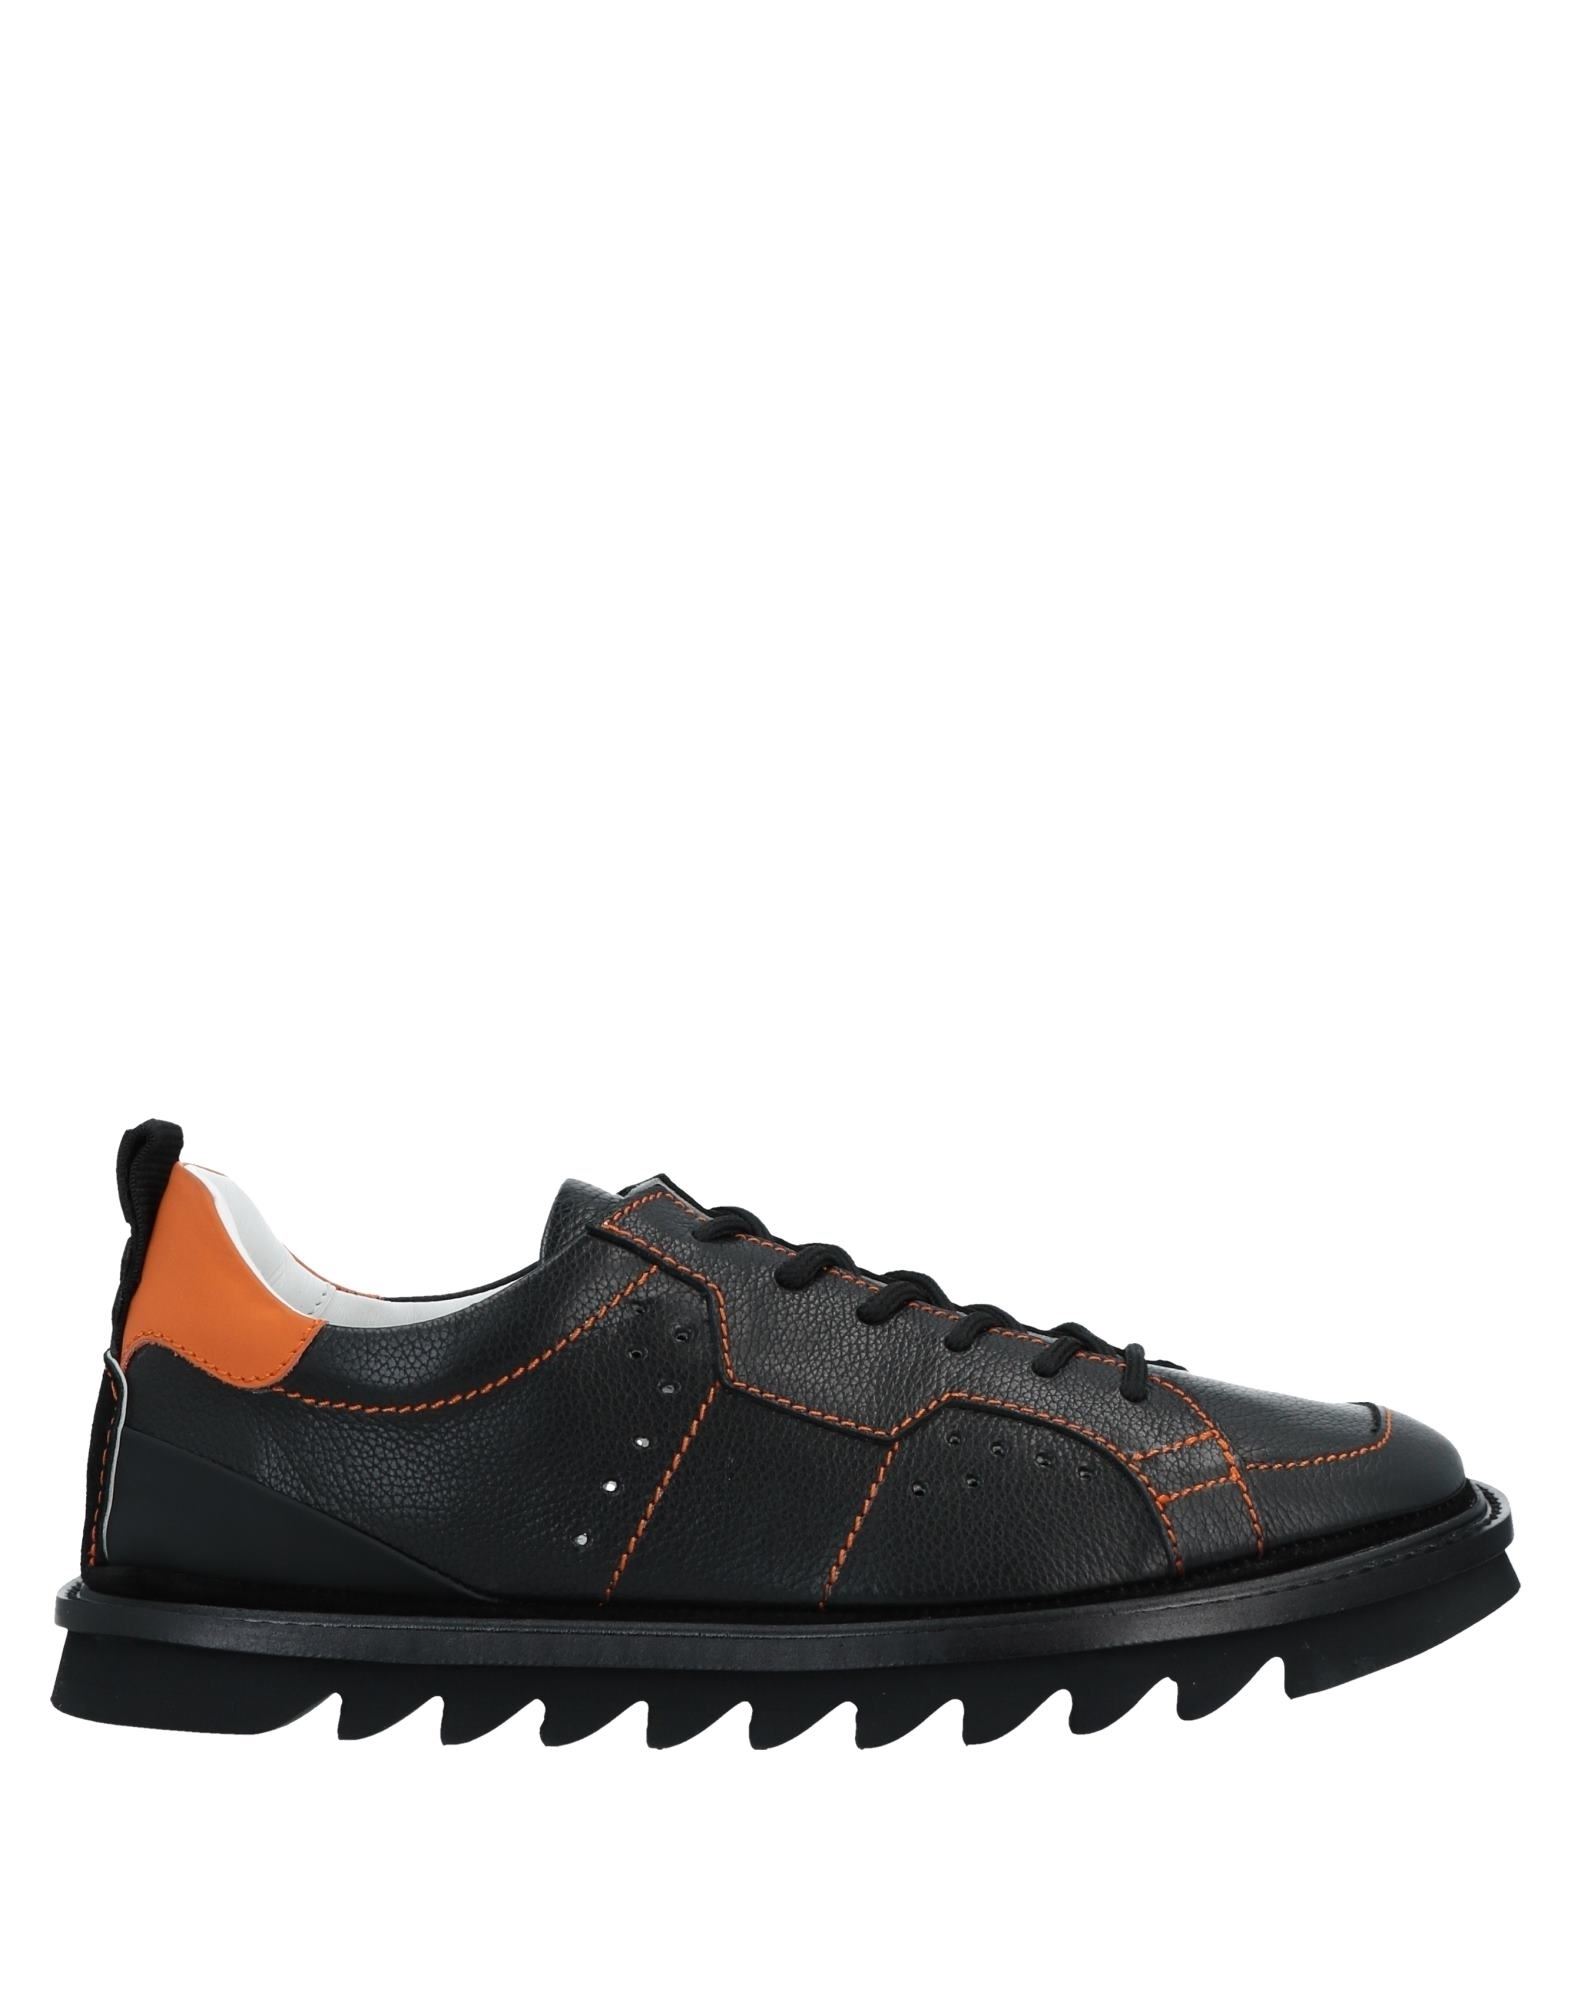 Attimonelli's Sneakers In Black